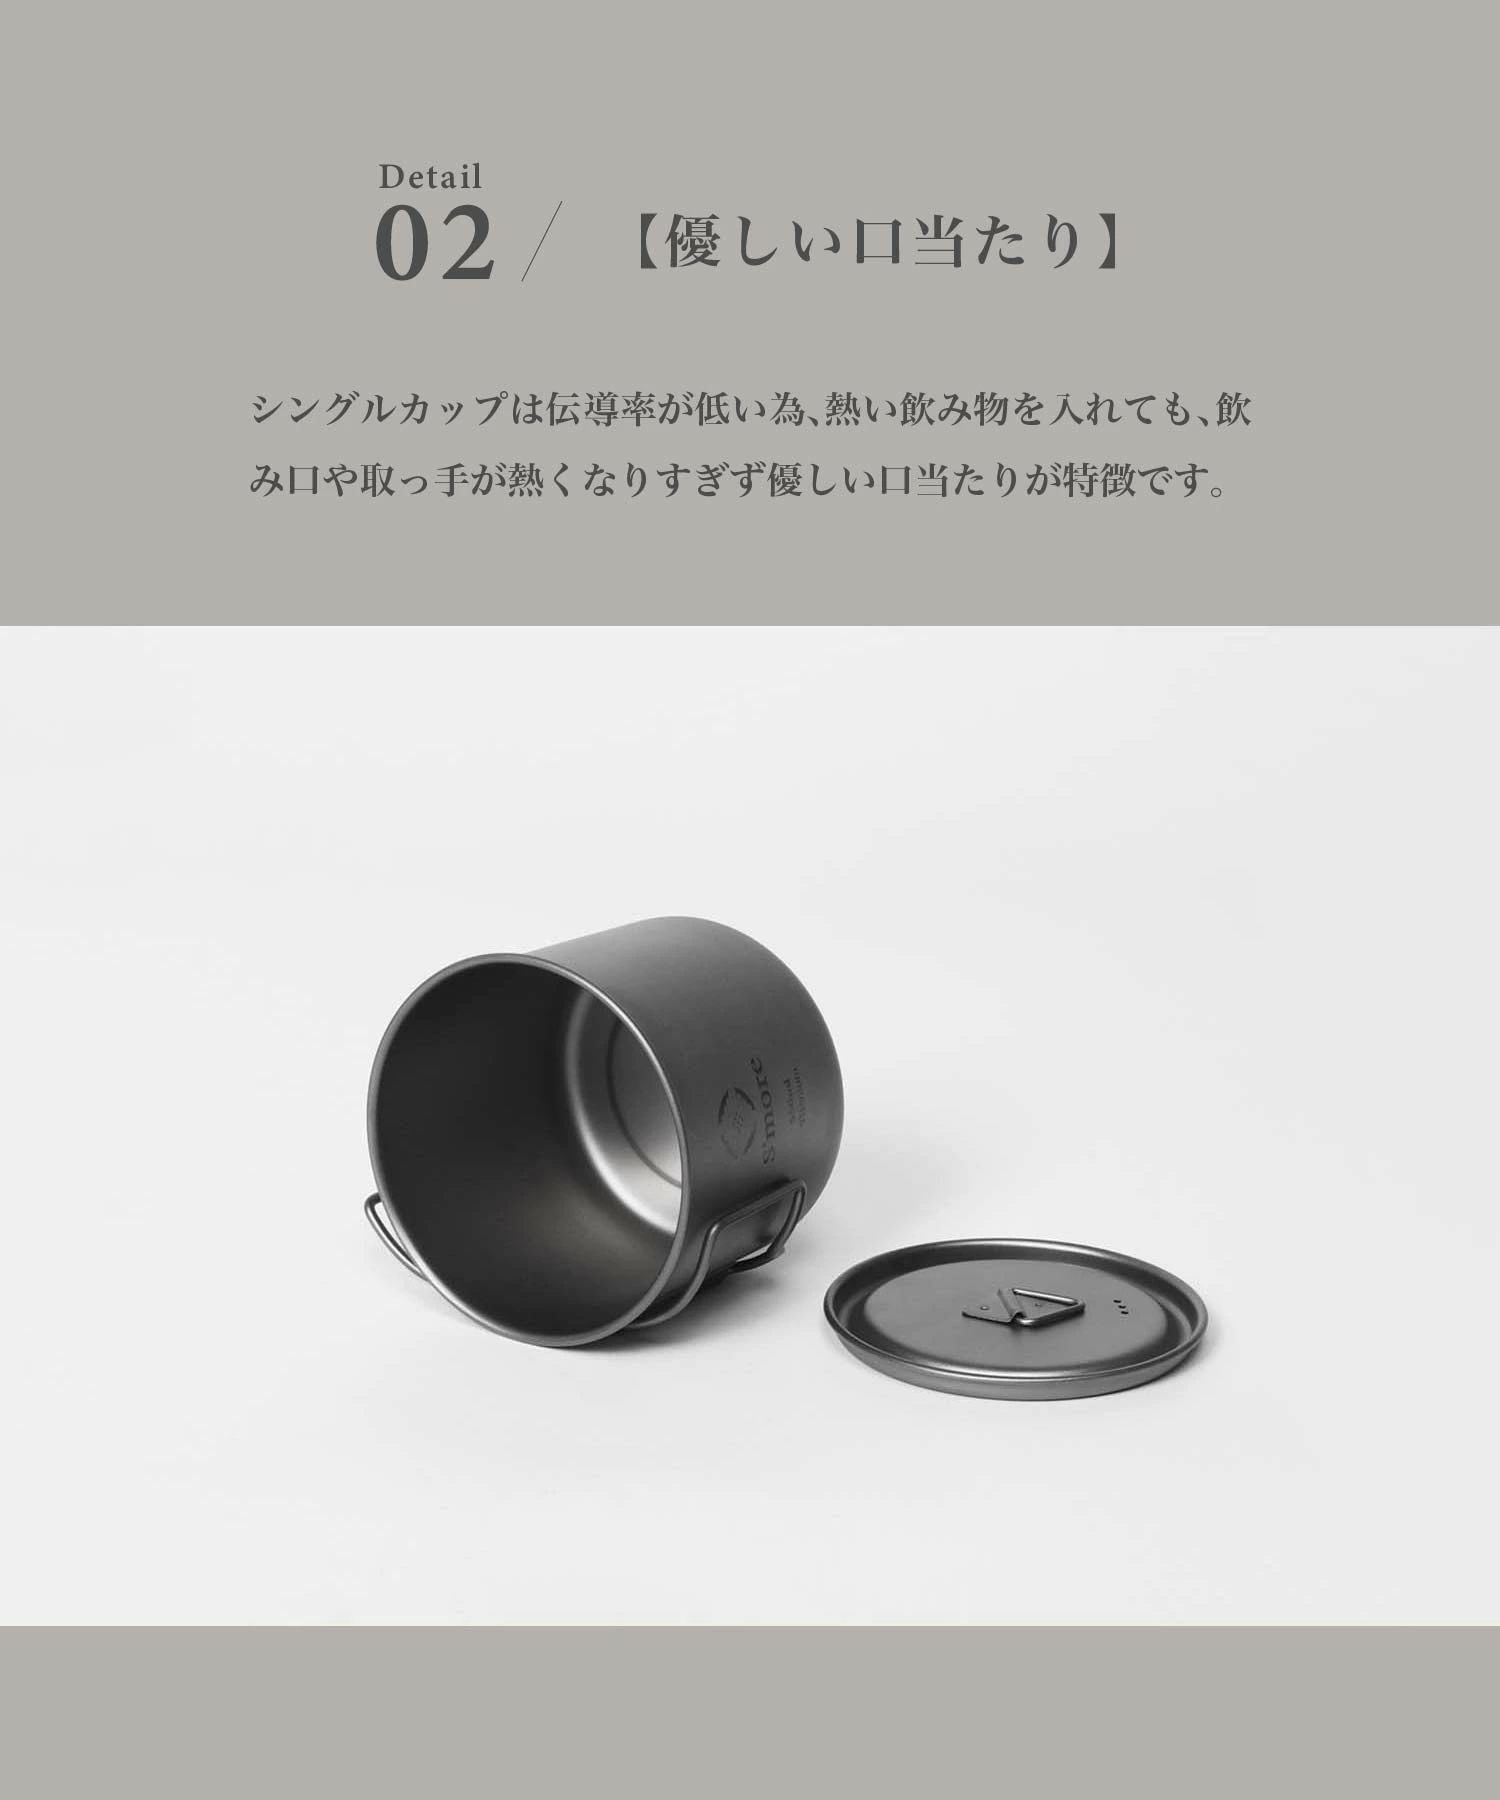 スモア Titanium Mug with Lid 550